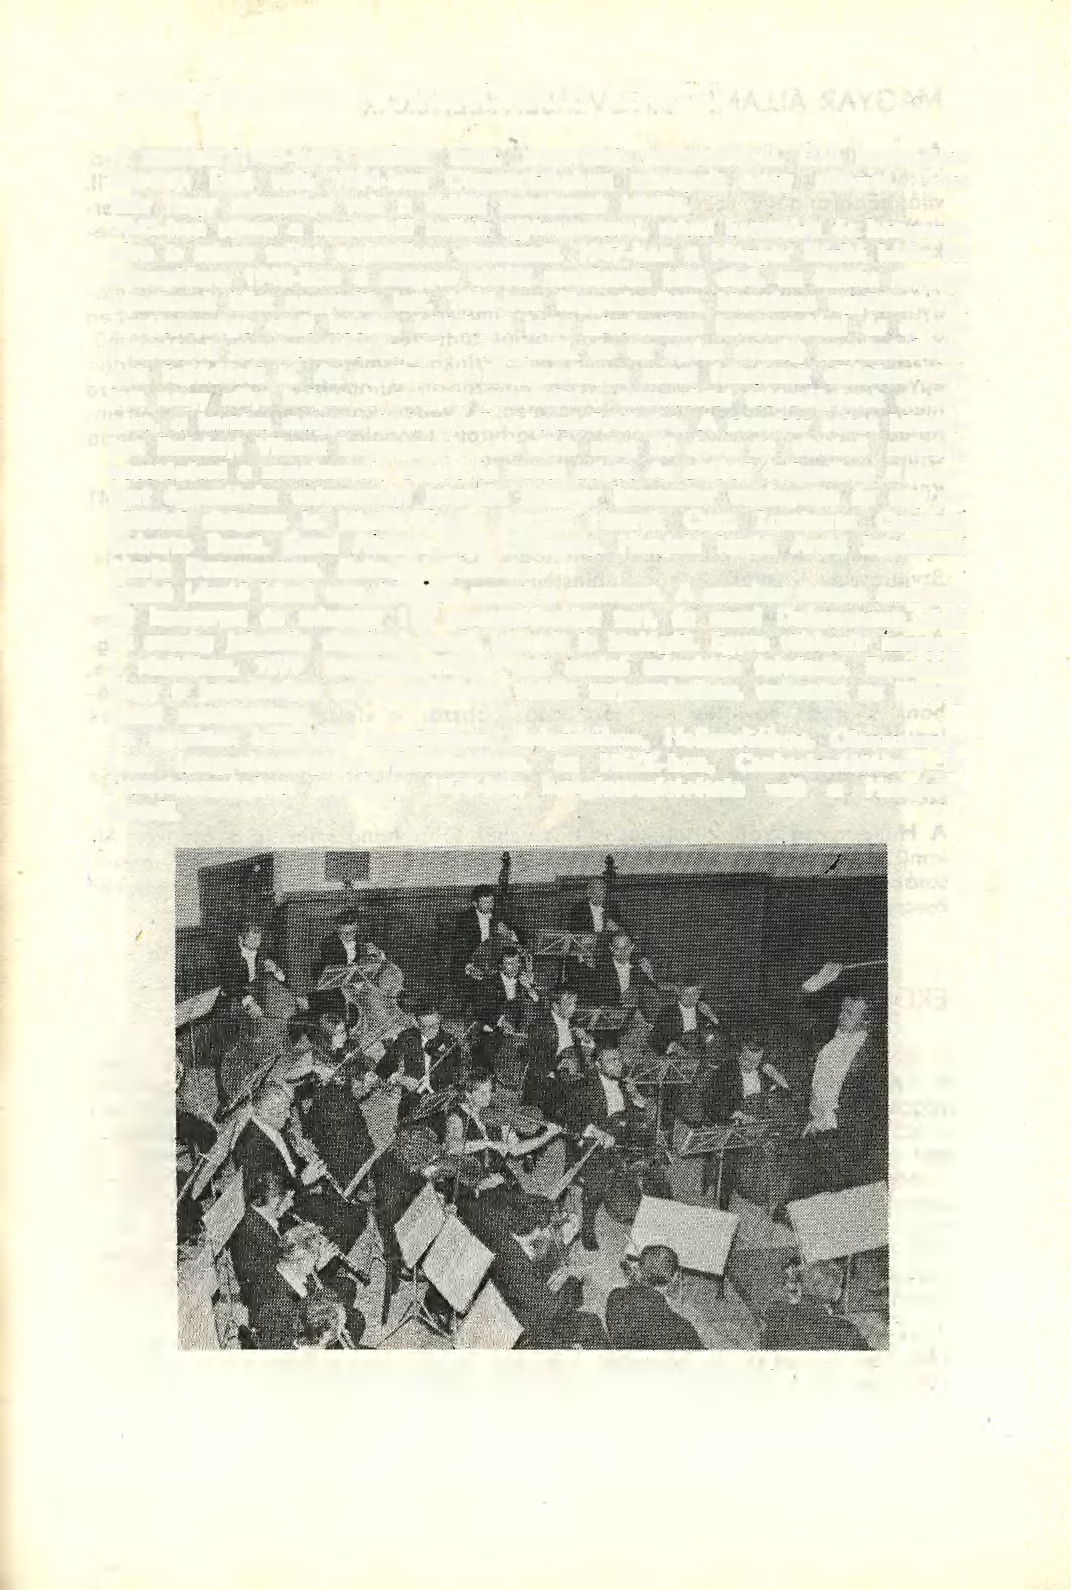 DEBRECENI MÁV FILHARMONIKUS ZENEKAR A zenekar 1923-ban alakult meg, nagyrészt vasutasokból. Első karmestere Ábrányi Emil volt. 1934-ben Olaszországban szerepelt nagy sikerrel.